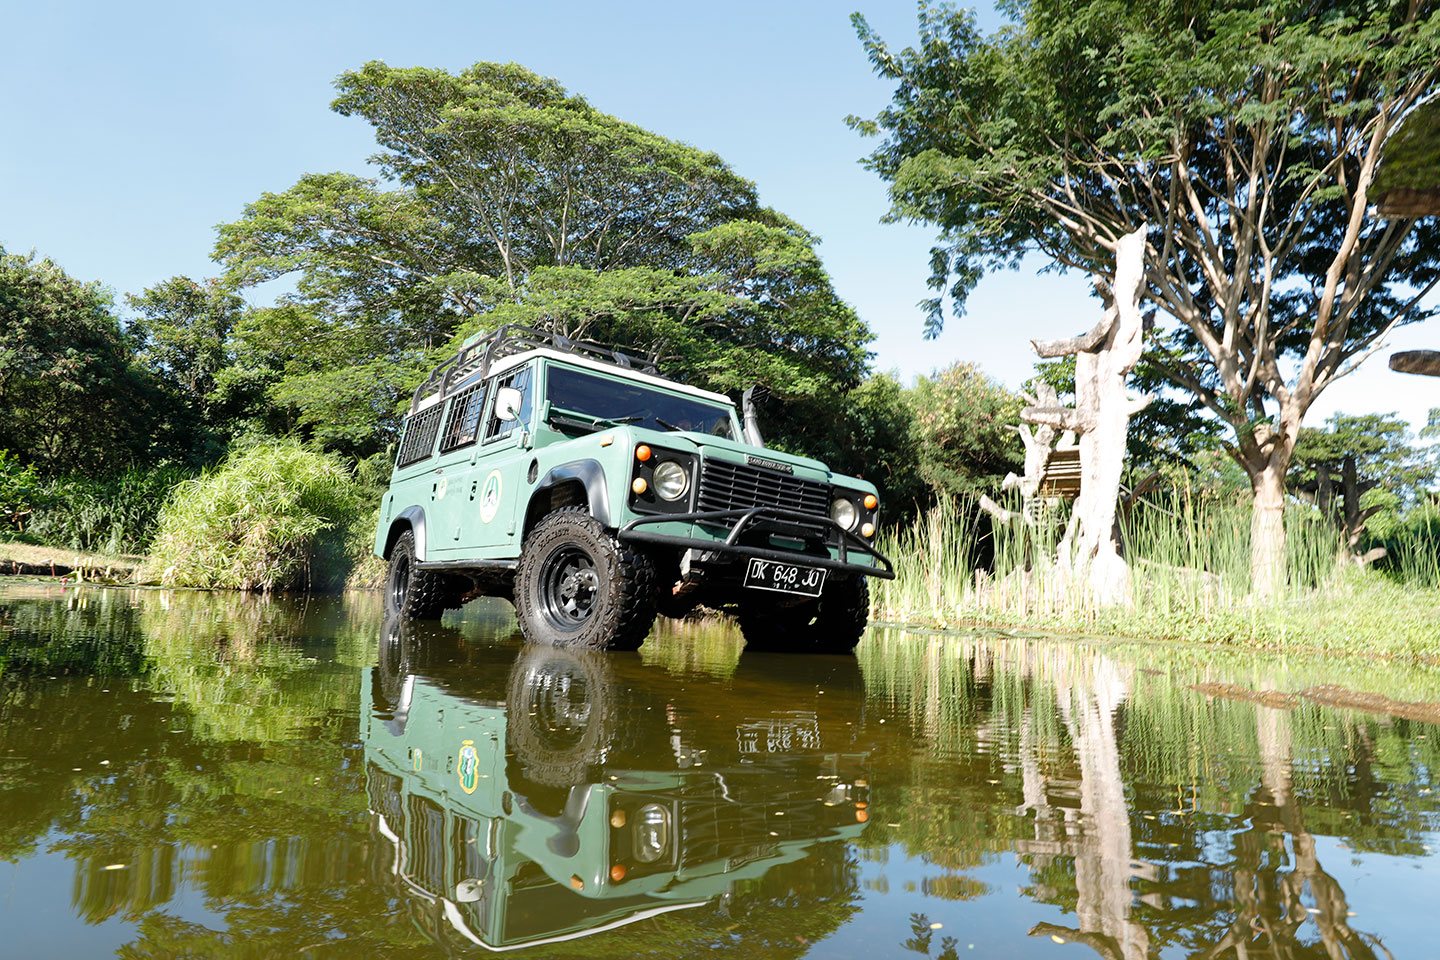 Bali Safari 4x4 vehicle